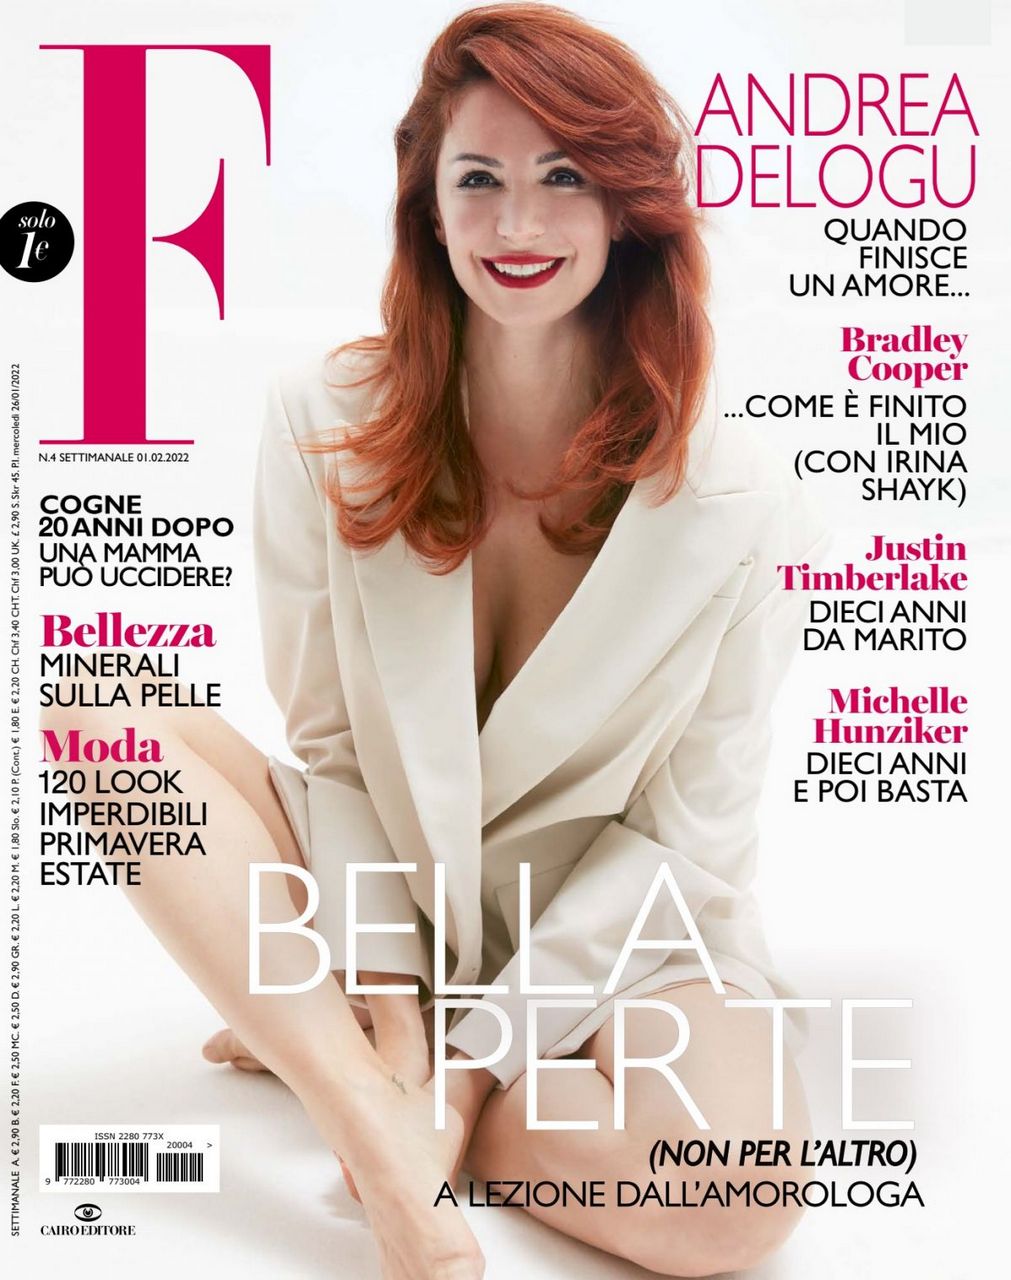 Andrea Delogu For F Magazine February